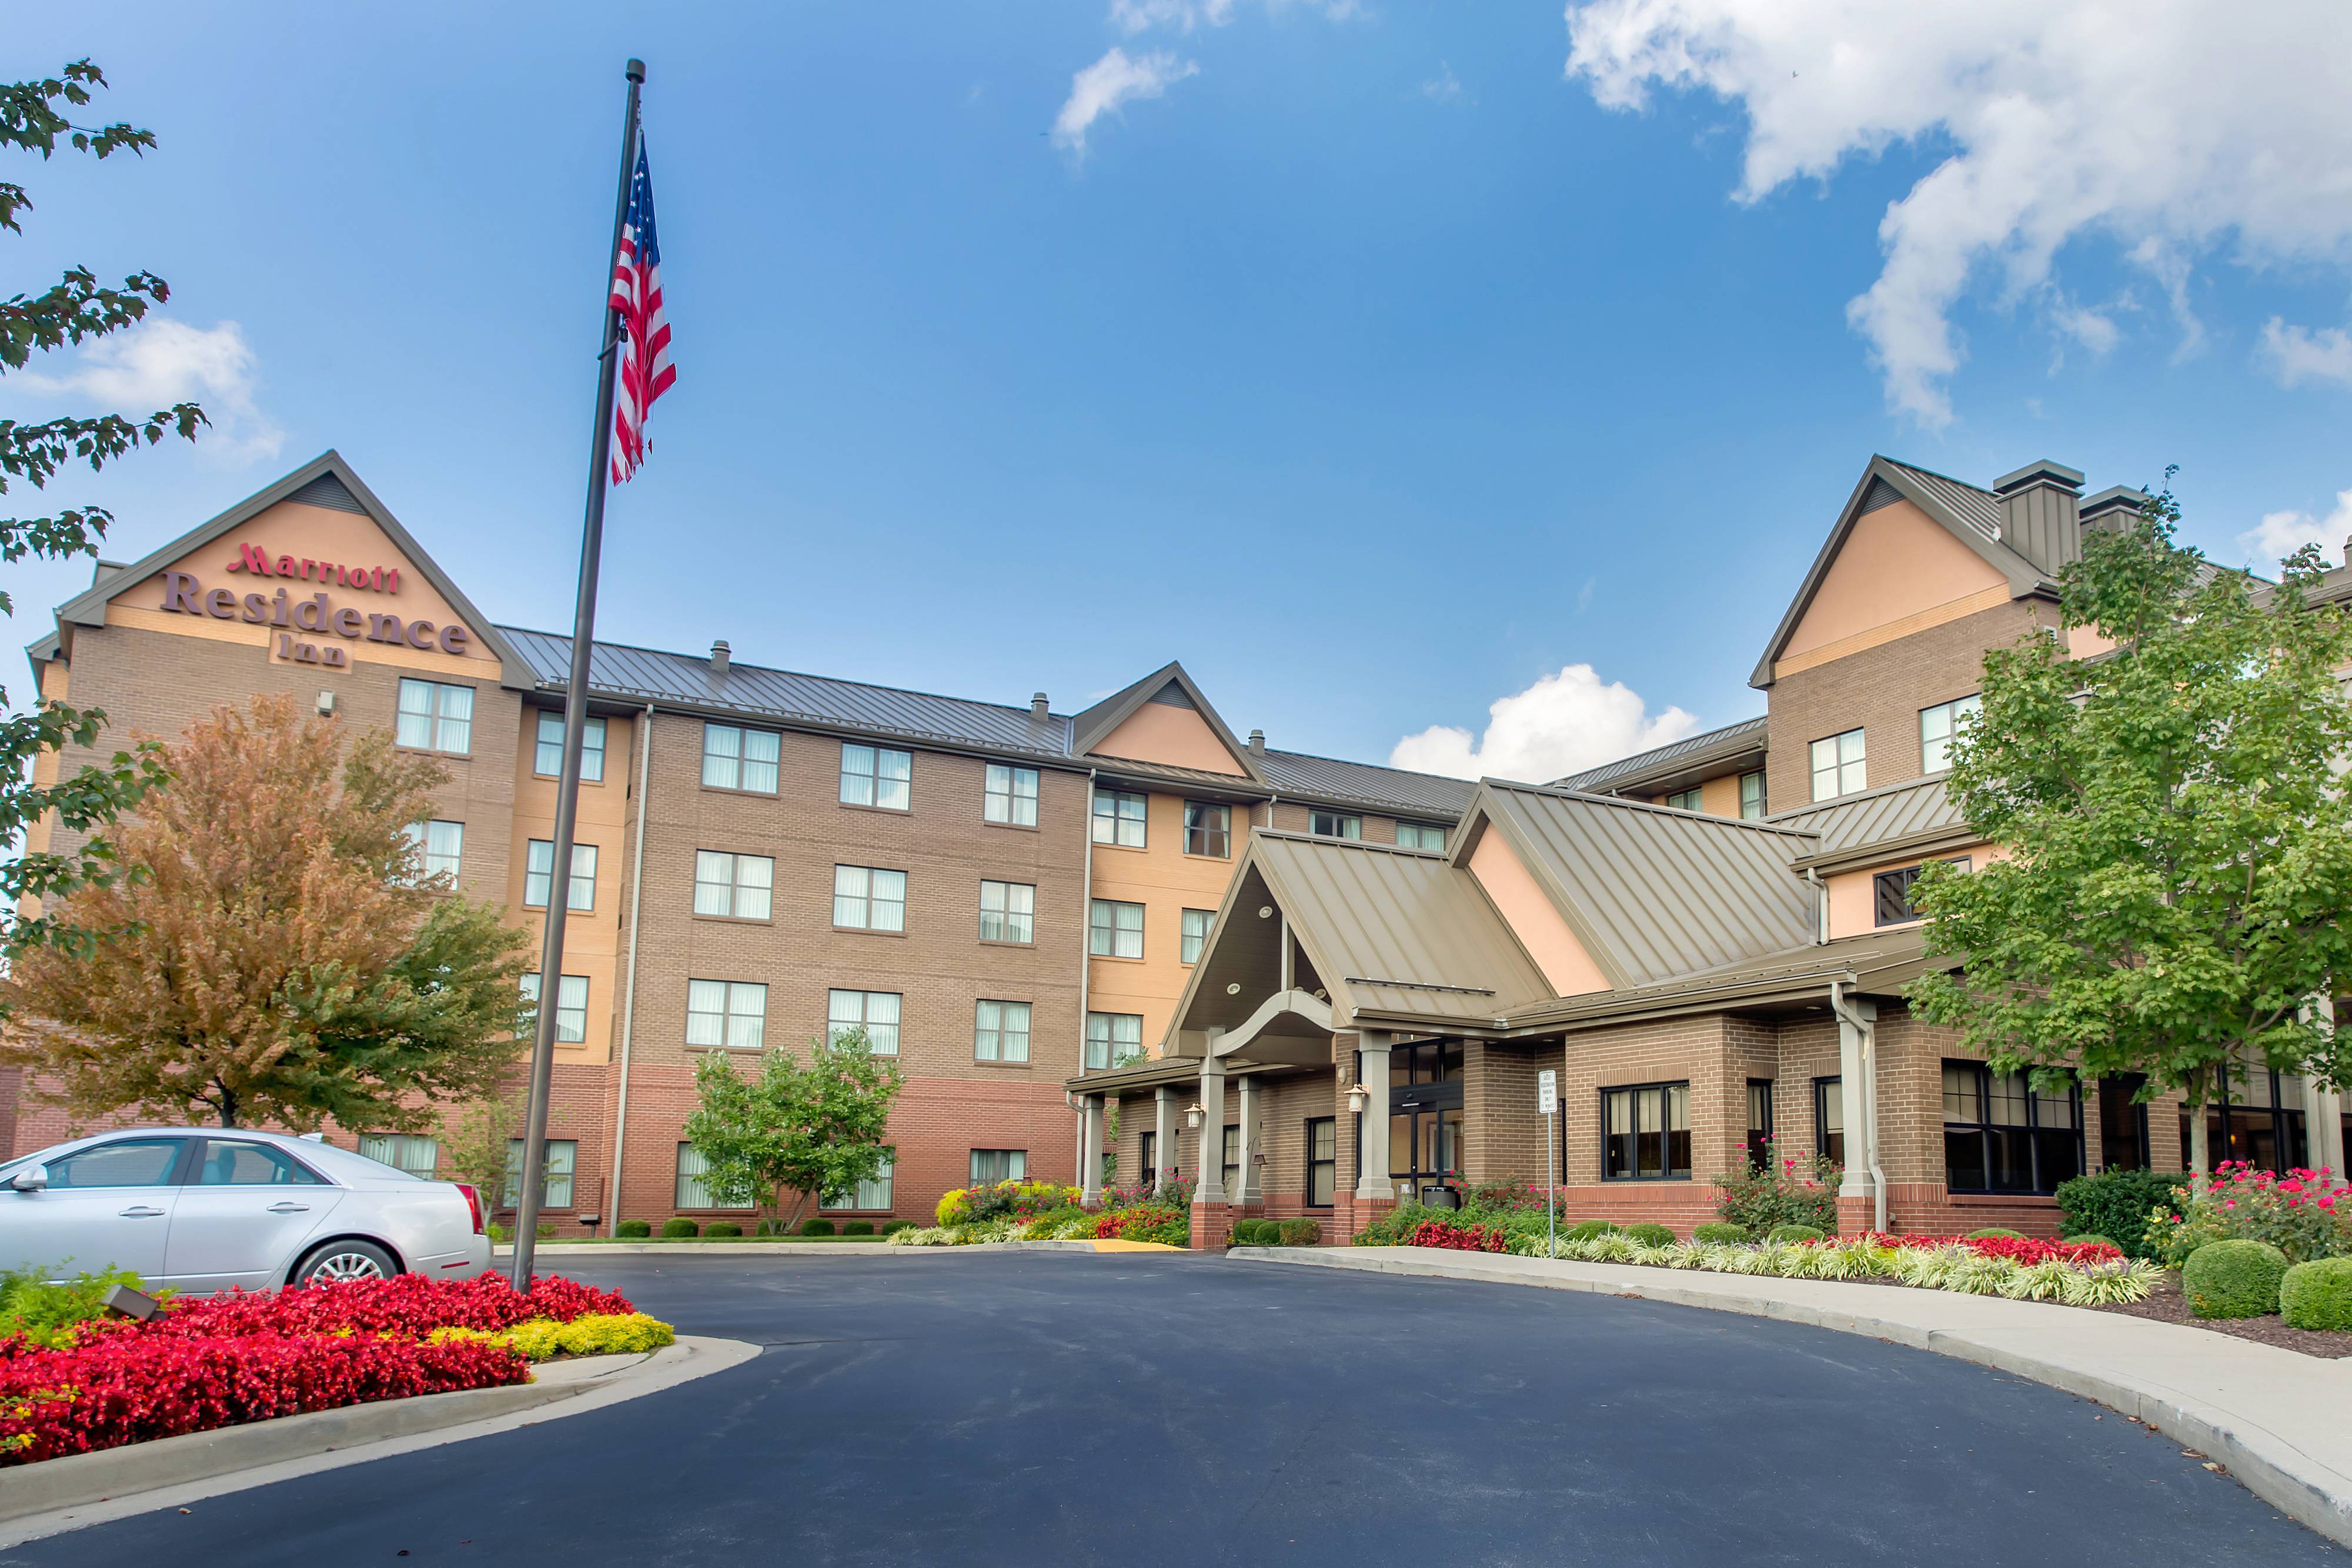 Photo of Residence Inn by Marriott Lexington Keeneland/Airport, Lexington, KY